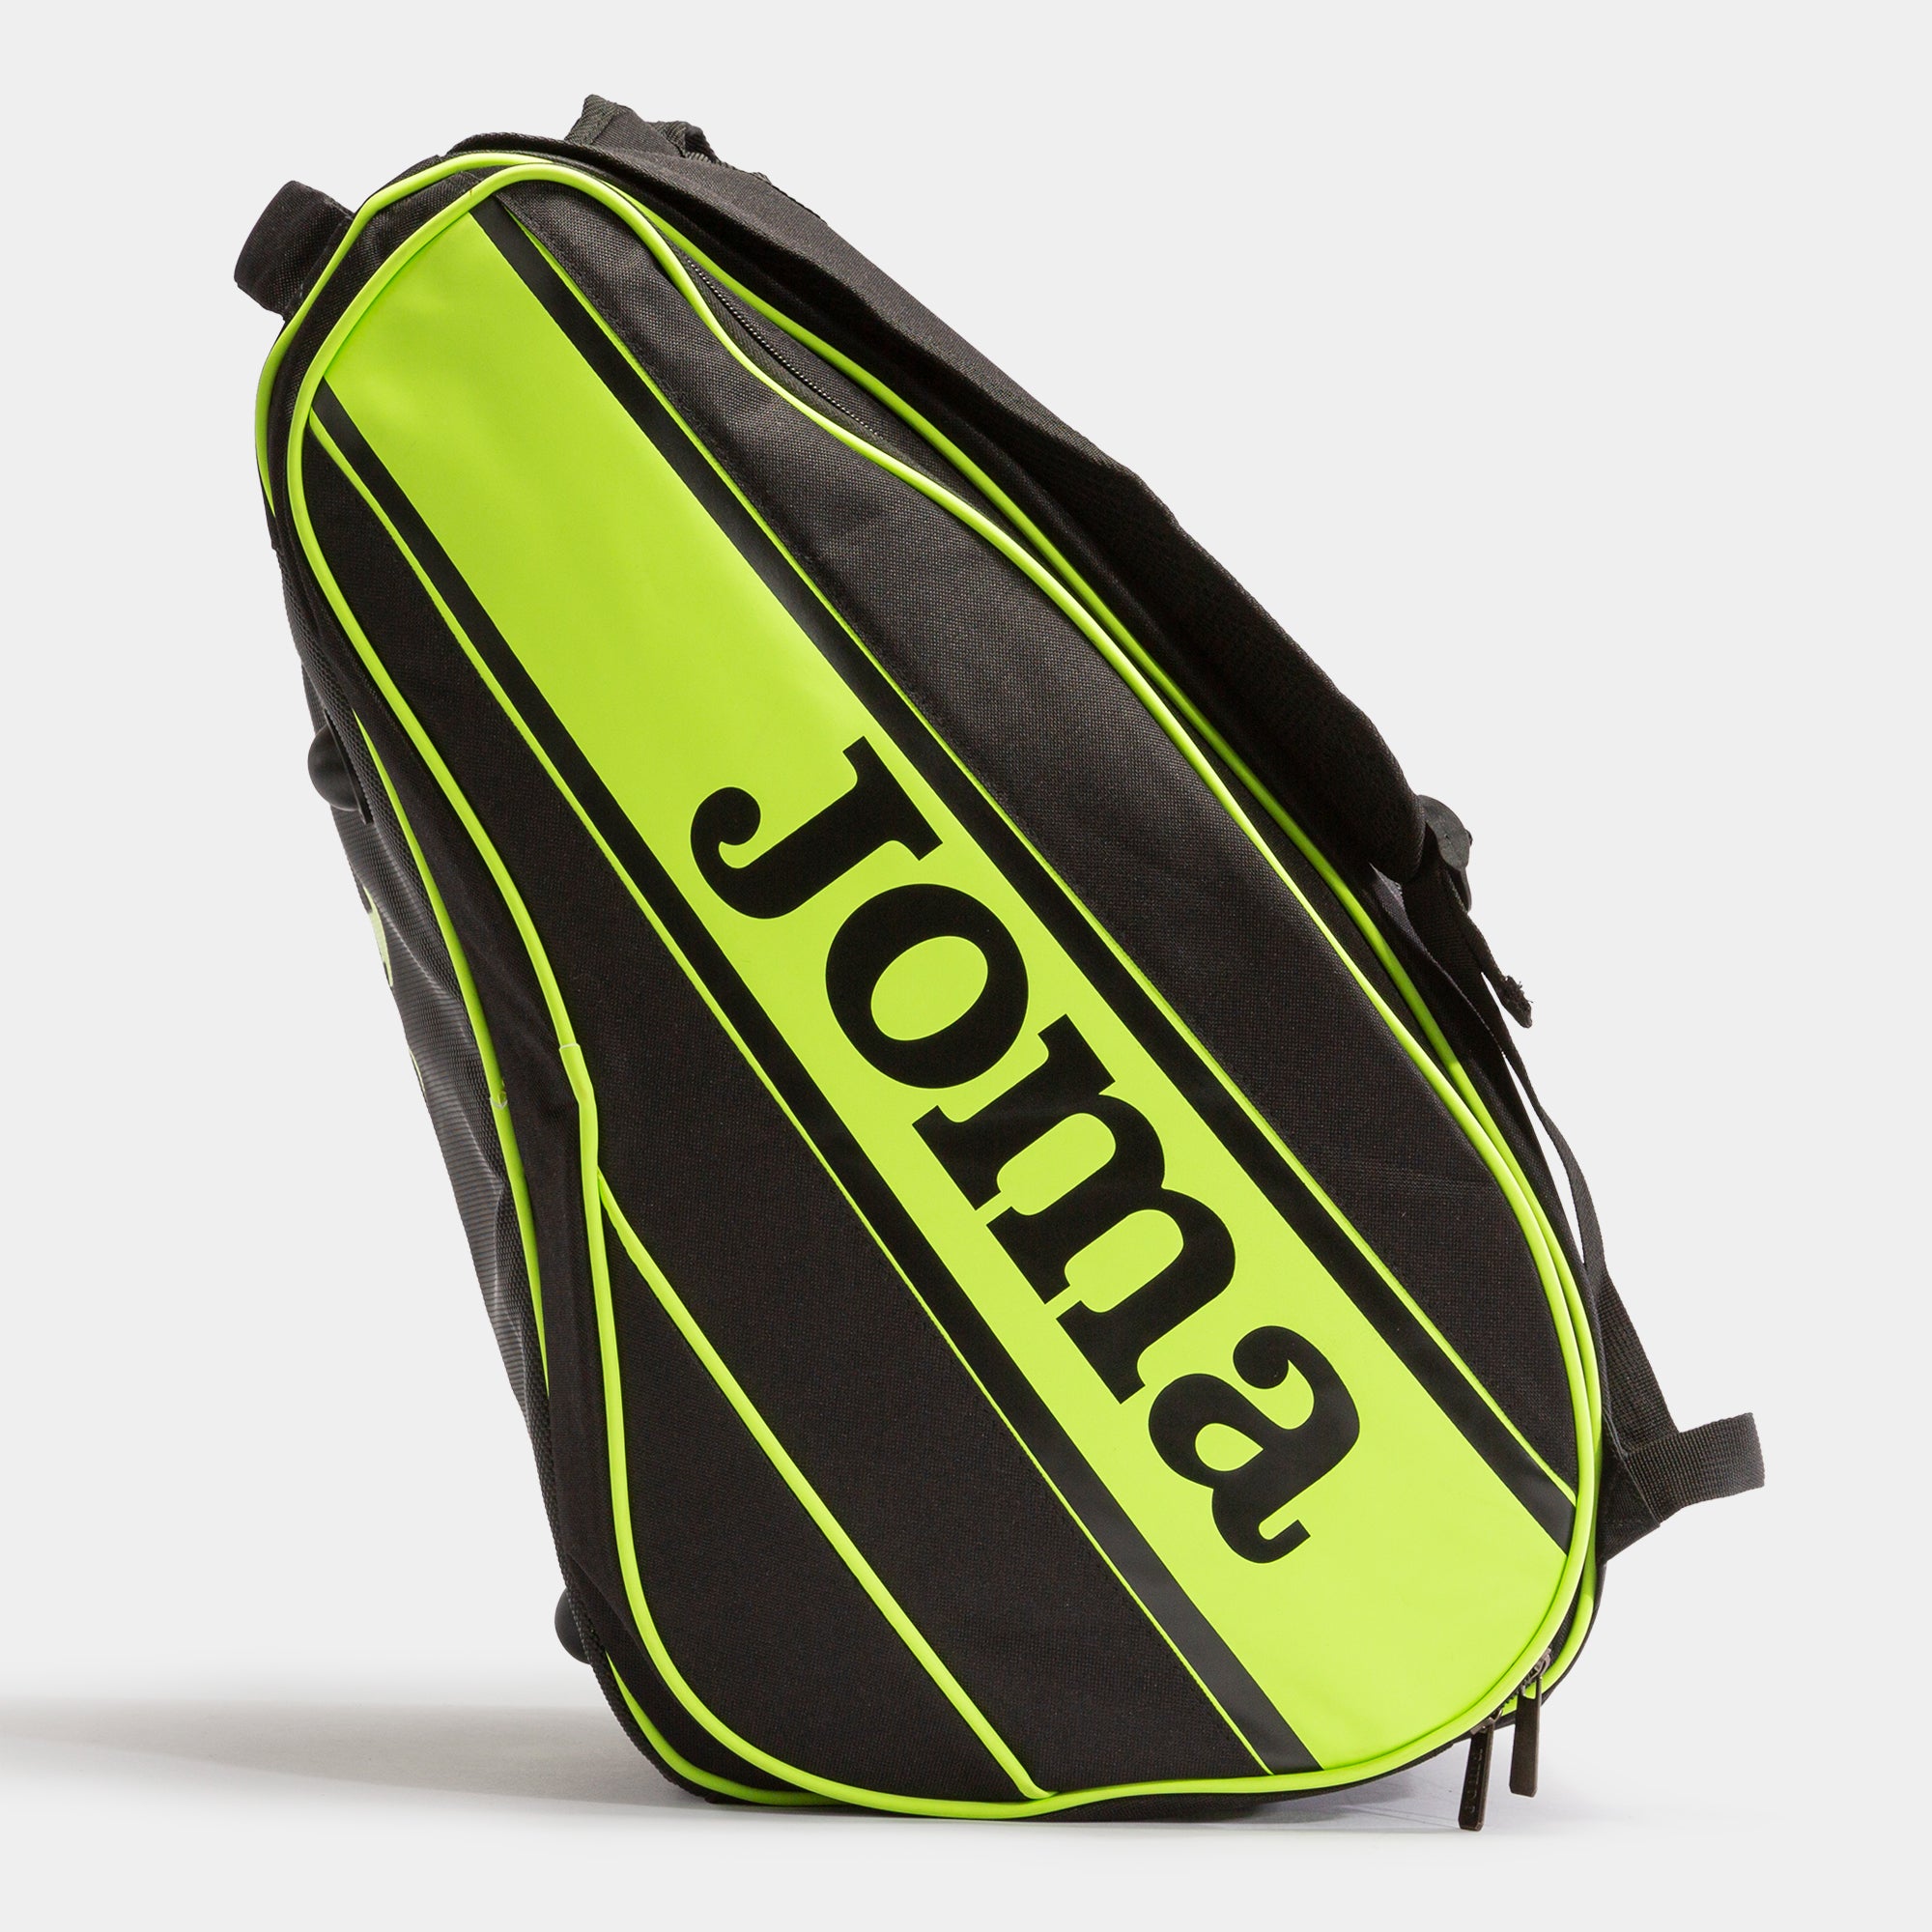 Joma Gold Pro padel bag